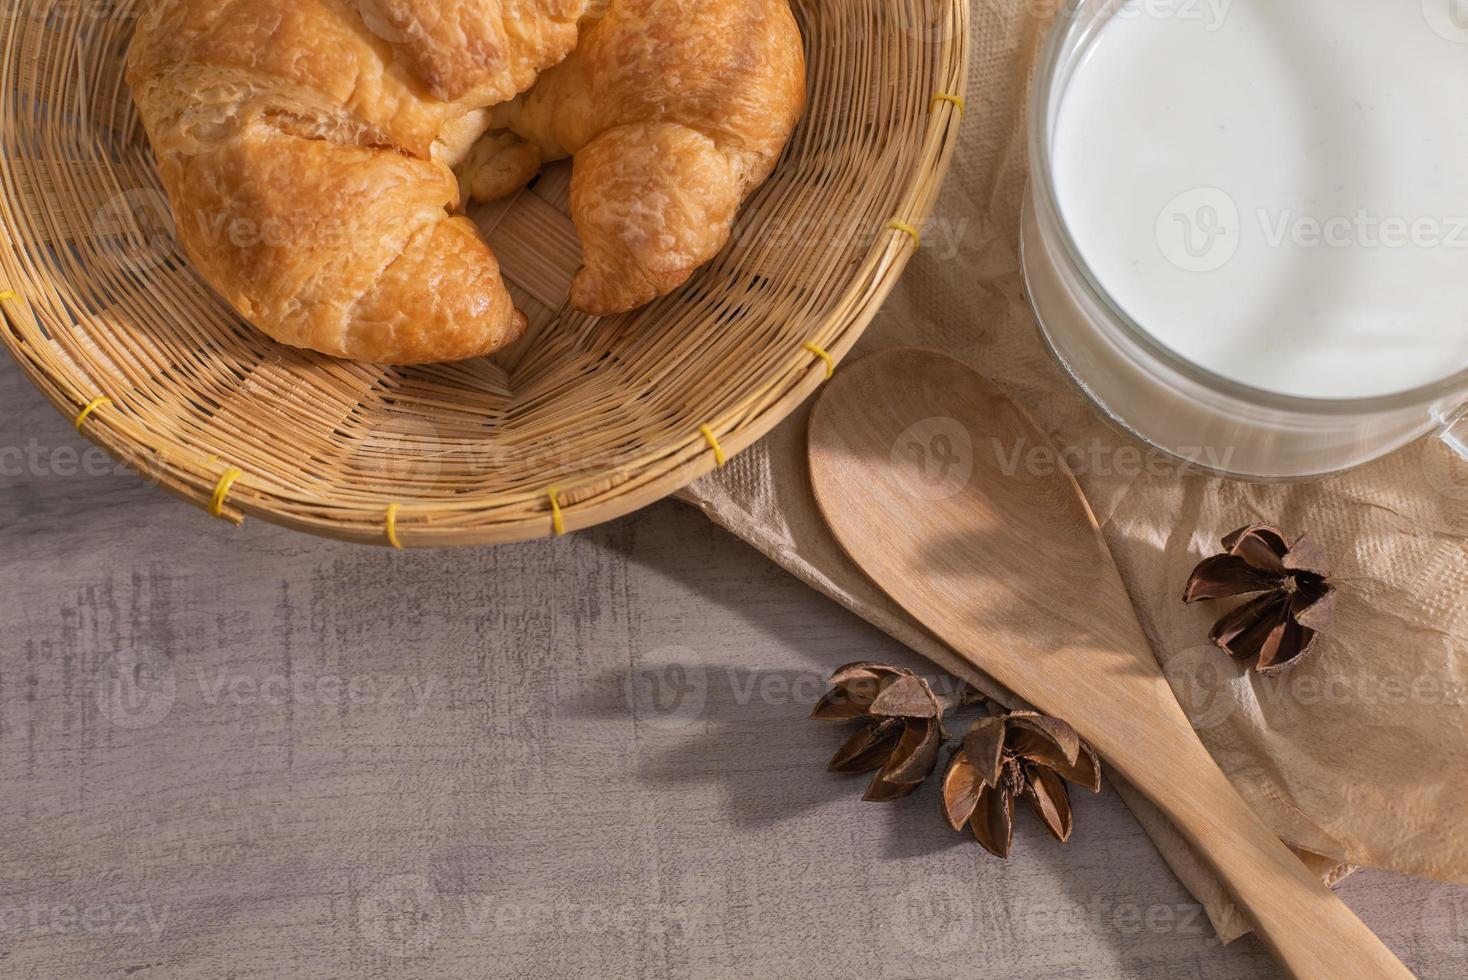 vista superior do croissant na cesta, um copo de leite, colher de pau foto